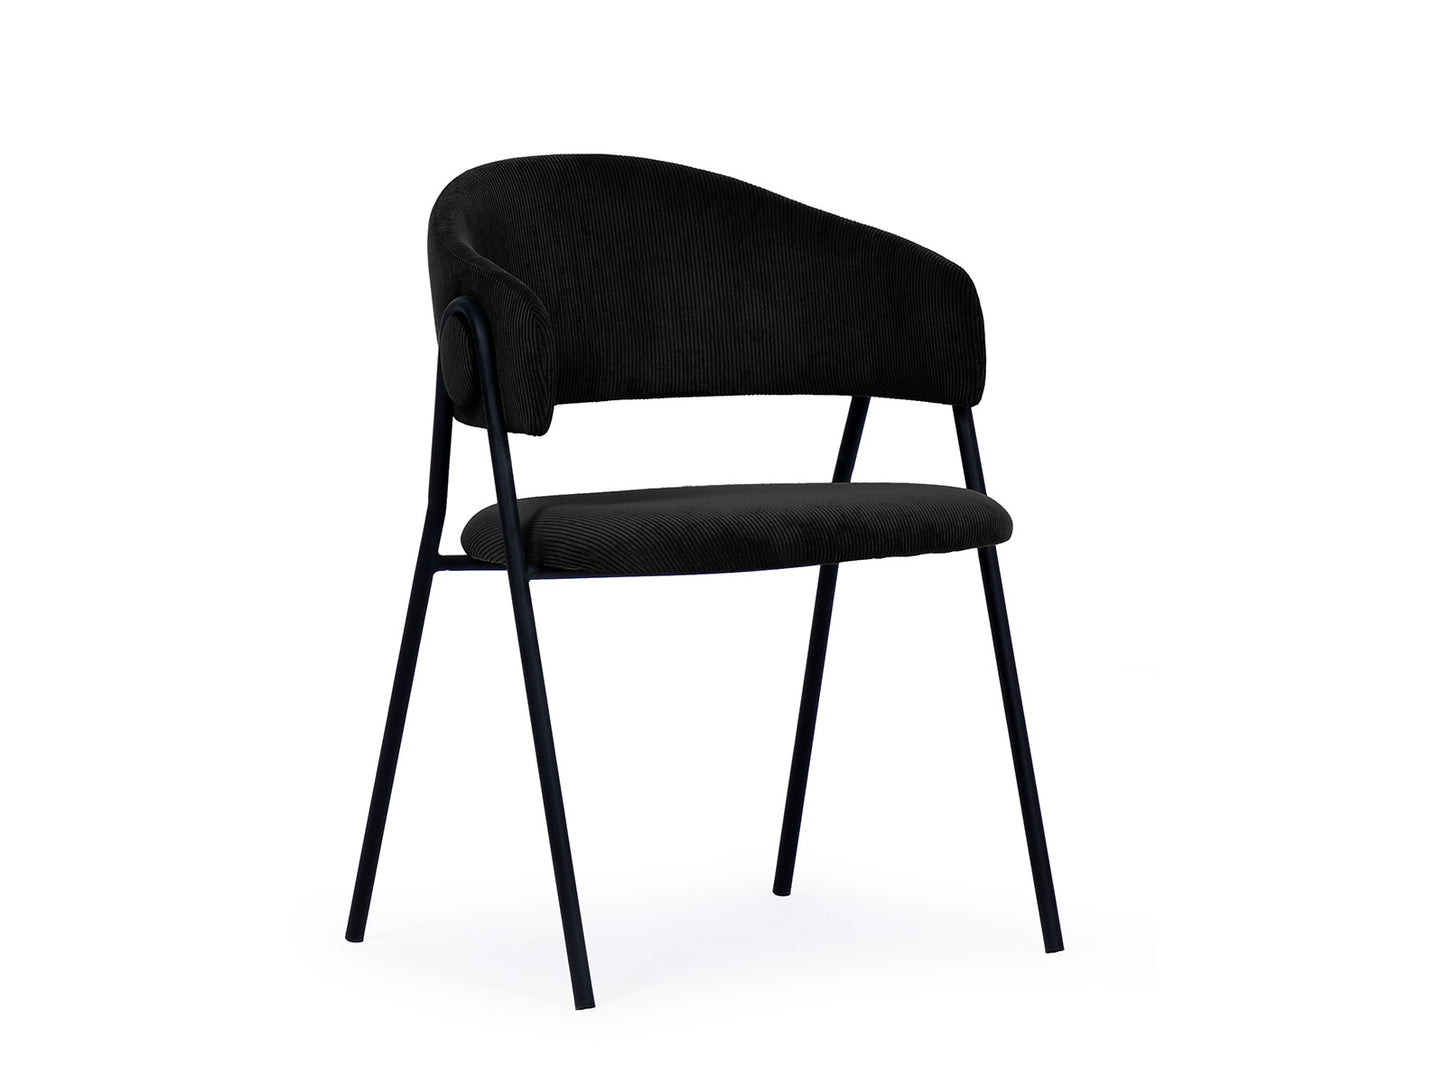 2 stk. Lina Spisebordsstole, sort farvet, sort metal ben.